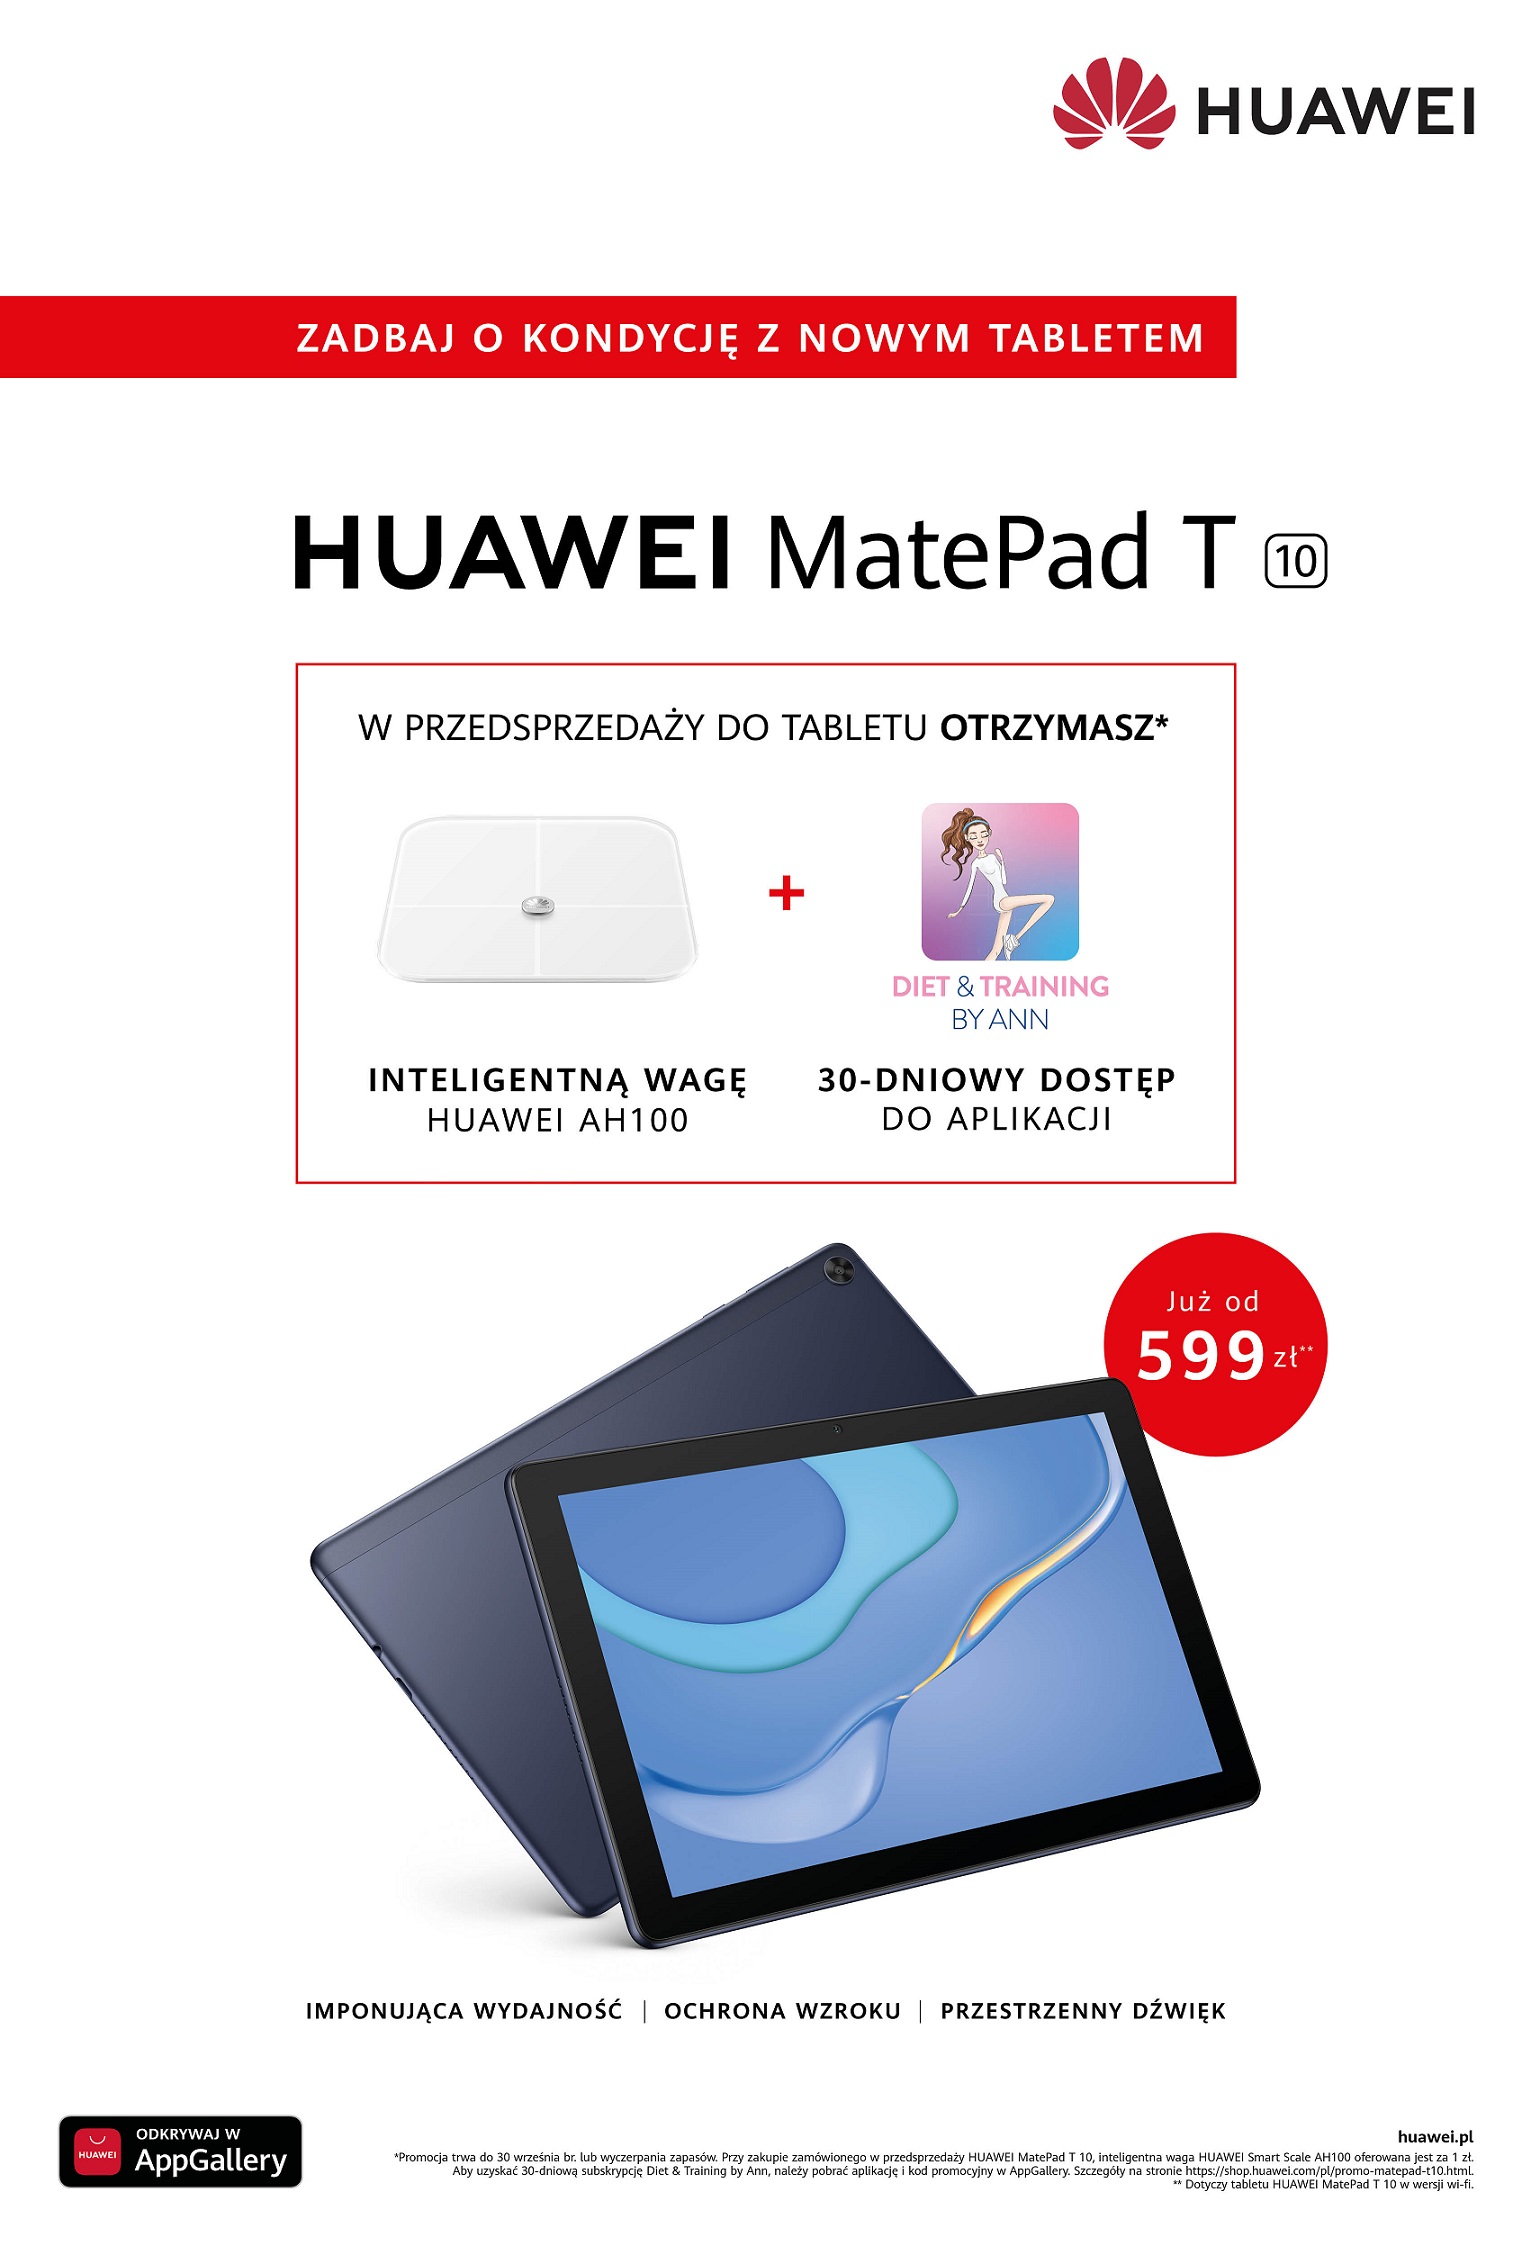 MatePad T10 oferta w przedsprzedaÅ¼y